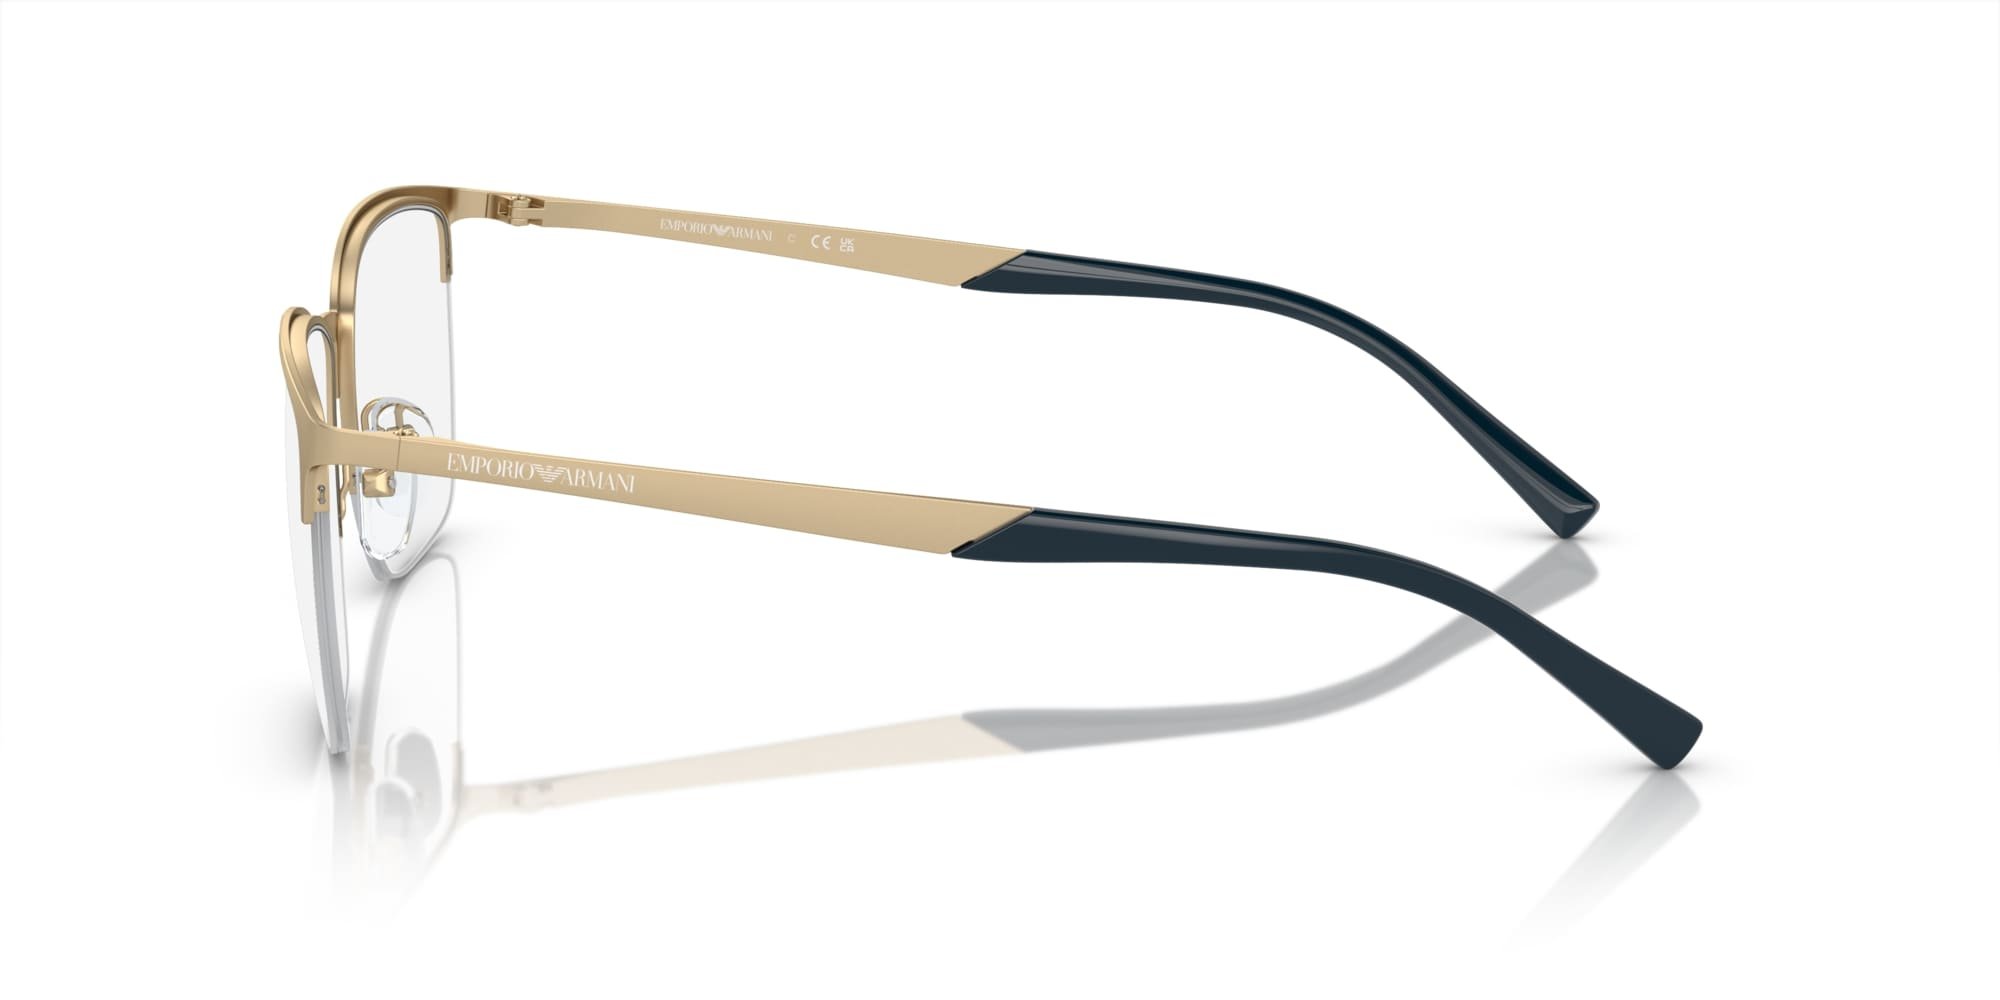 Das Bild zeigt die Korrektionsbrille EA1151 3002 von der Marke Emporio Armani in Gold.